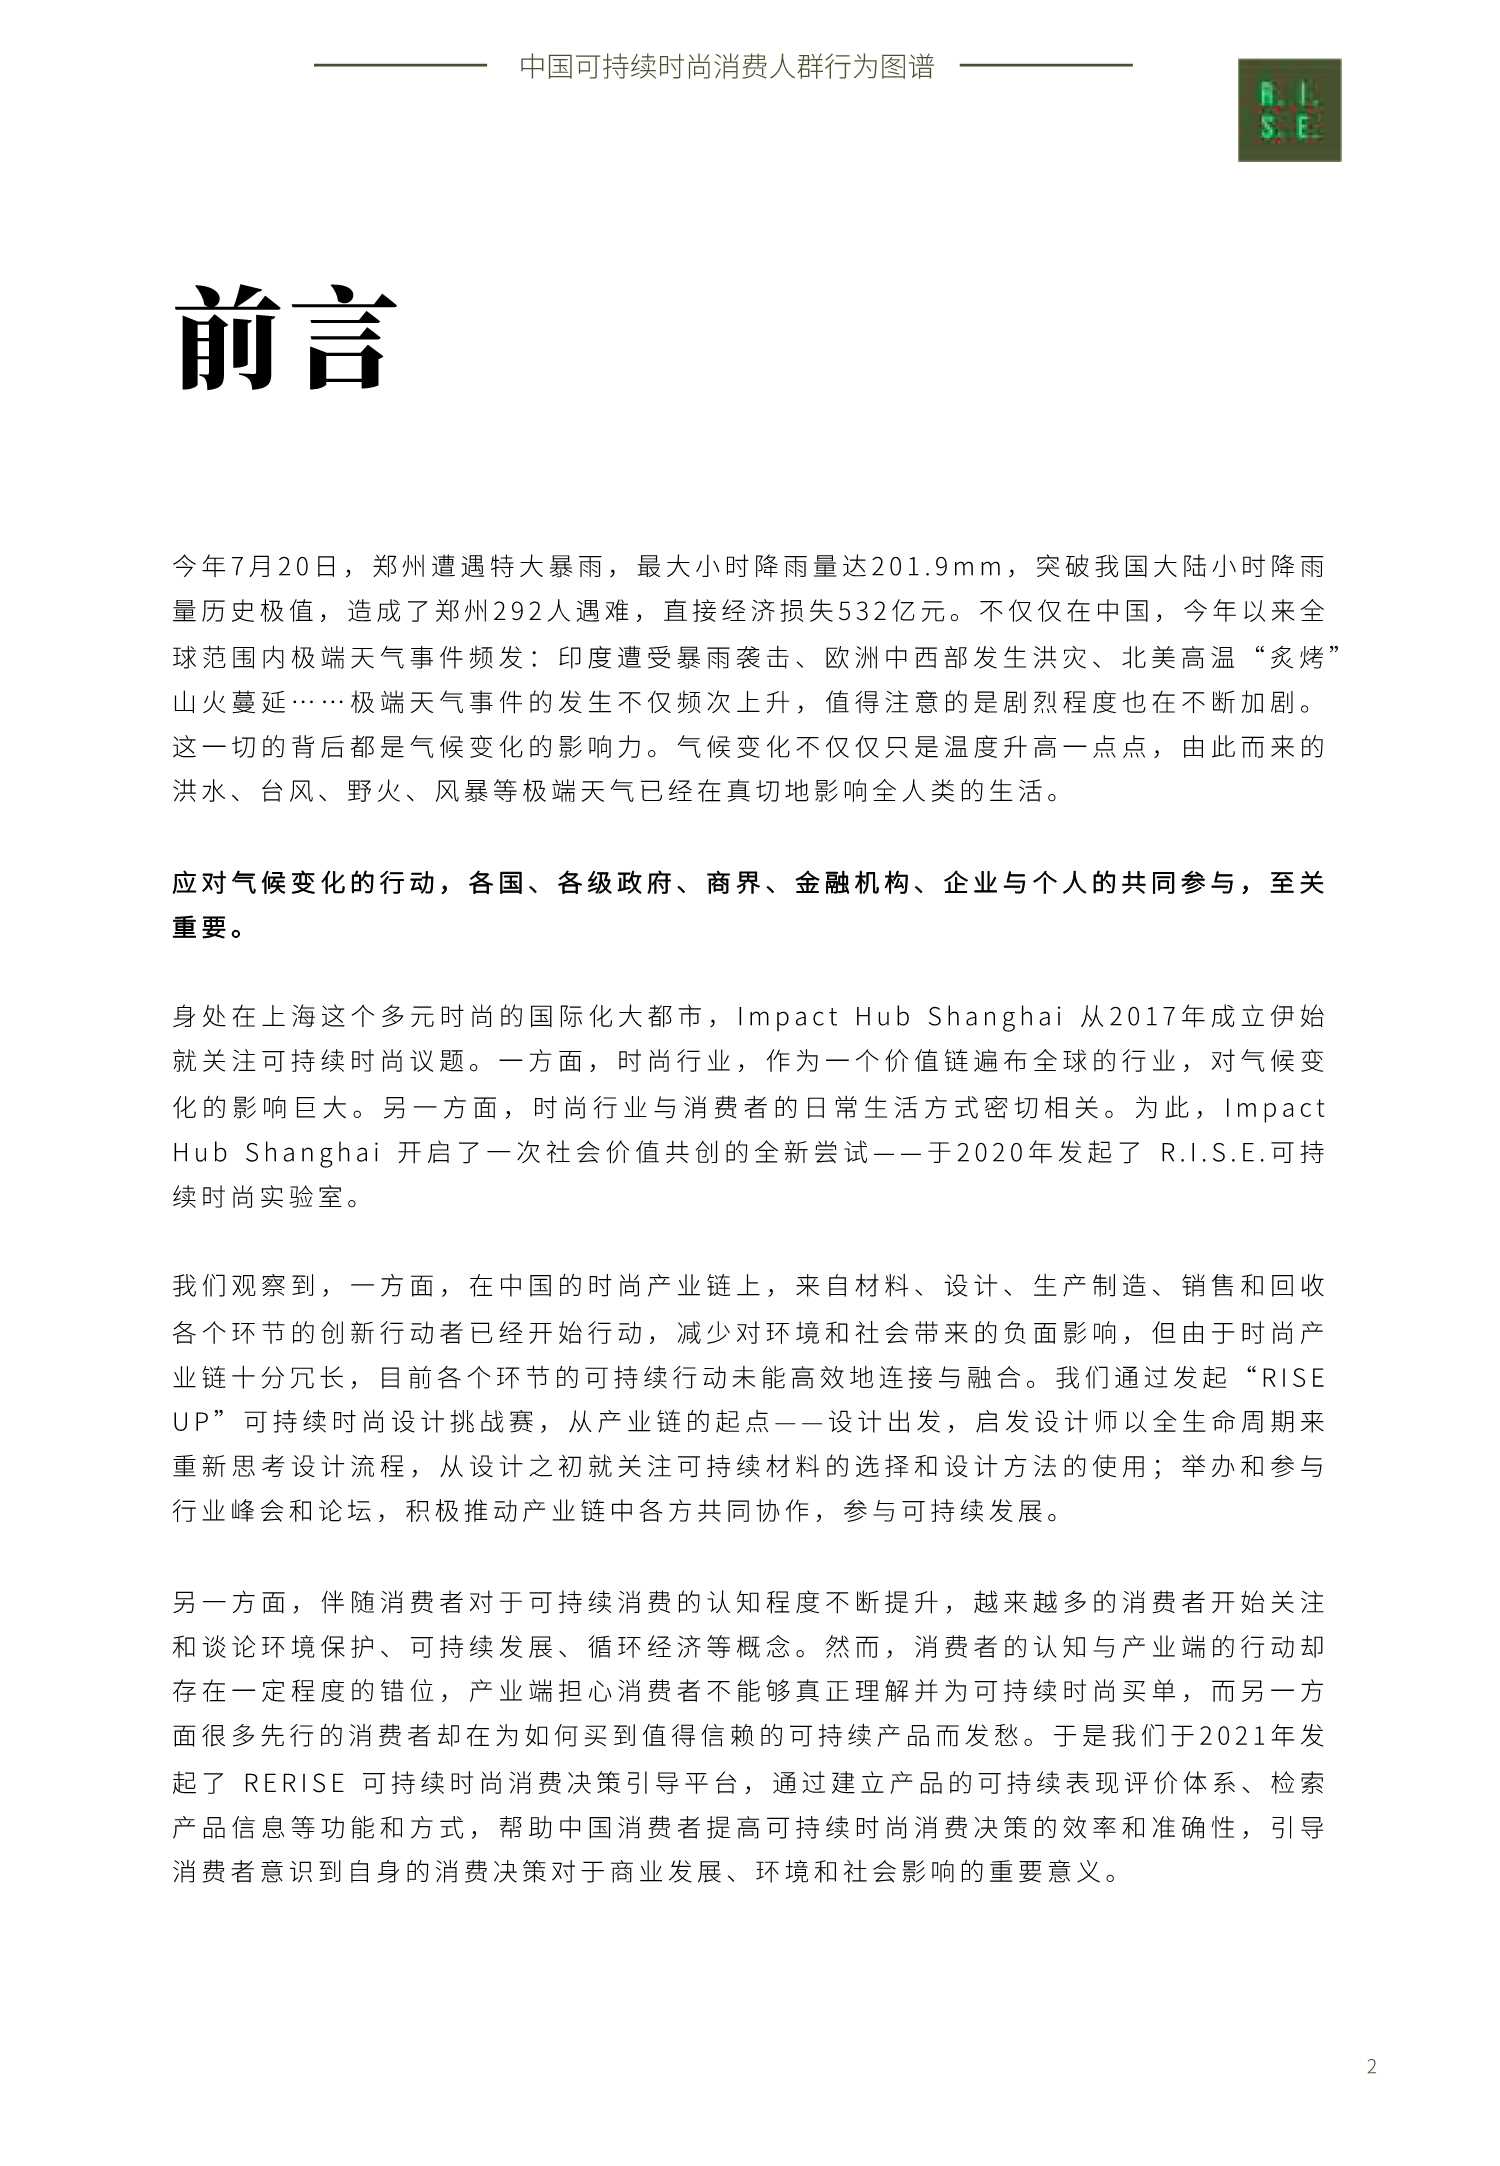 2021年中国可持续时尚消费人群行为图谱（中英文版）-2021.11-70页